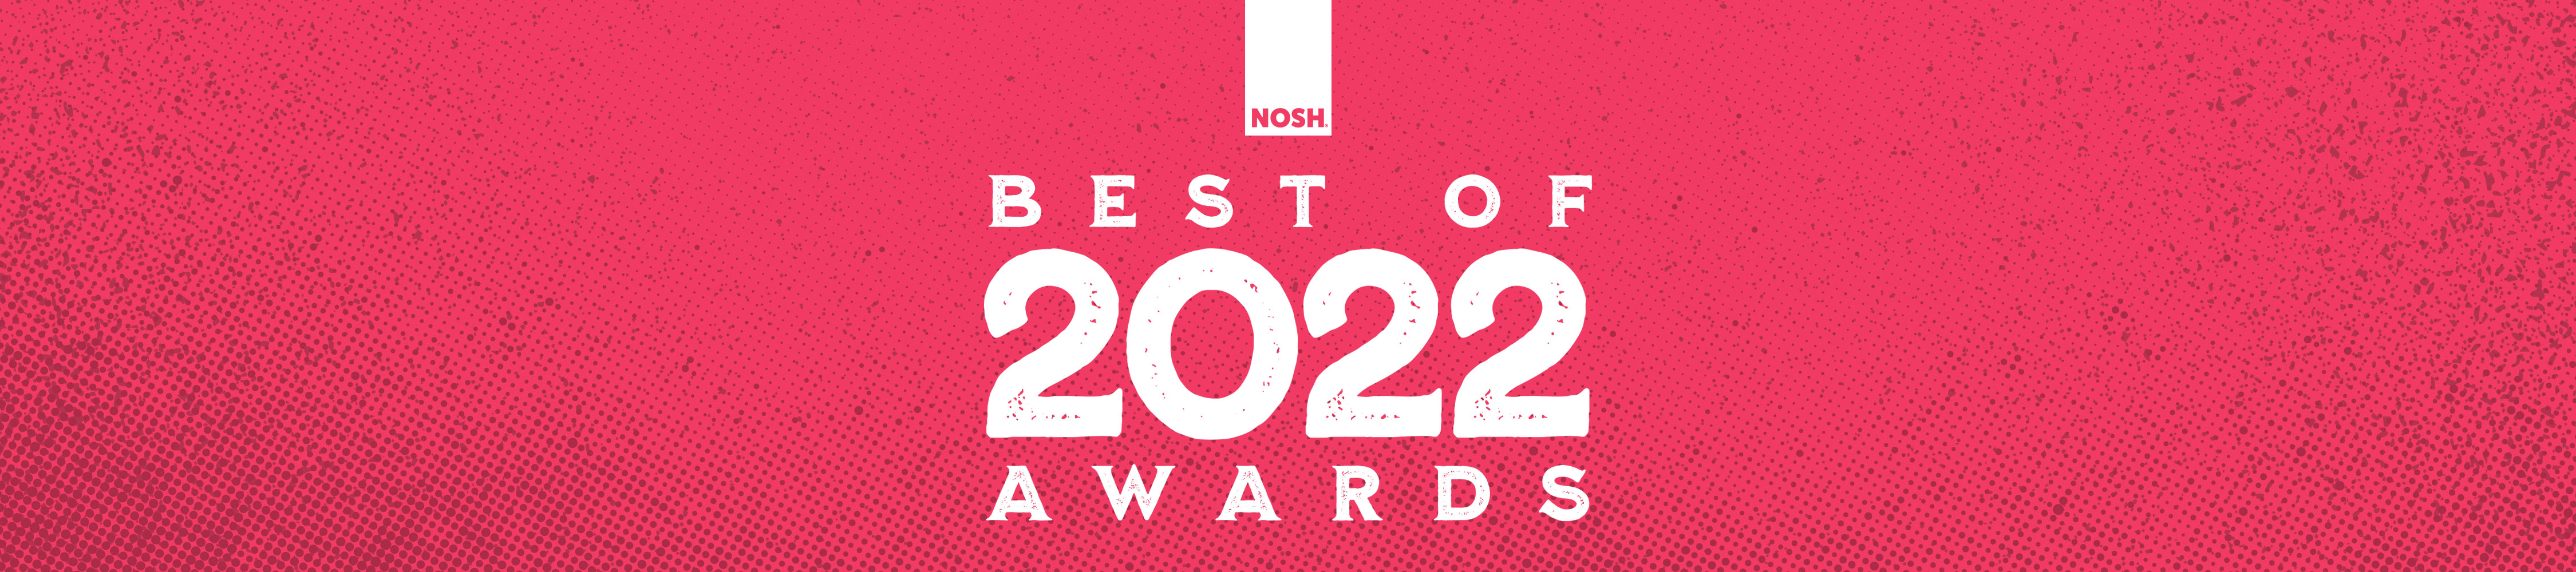 NOSH Best Of Awards